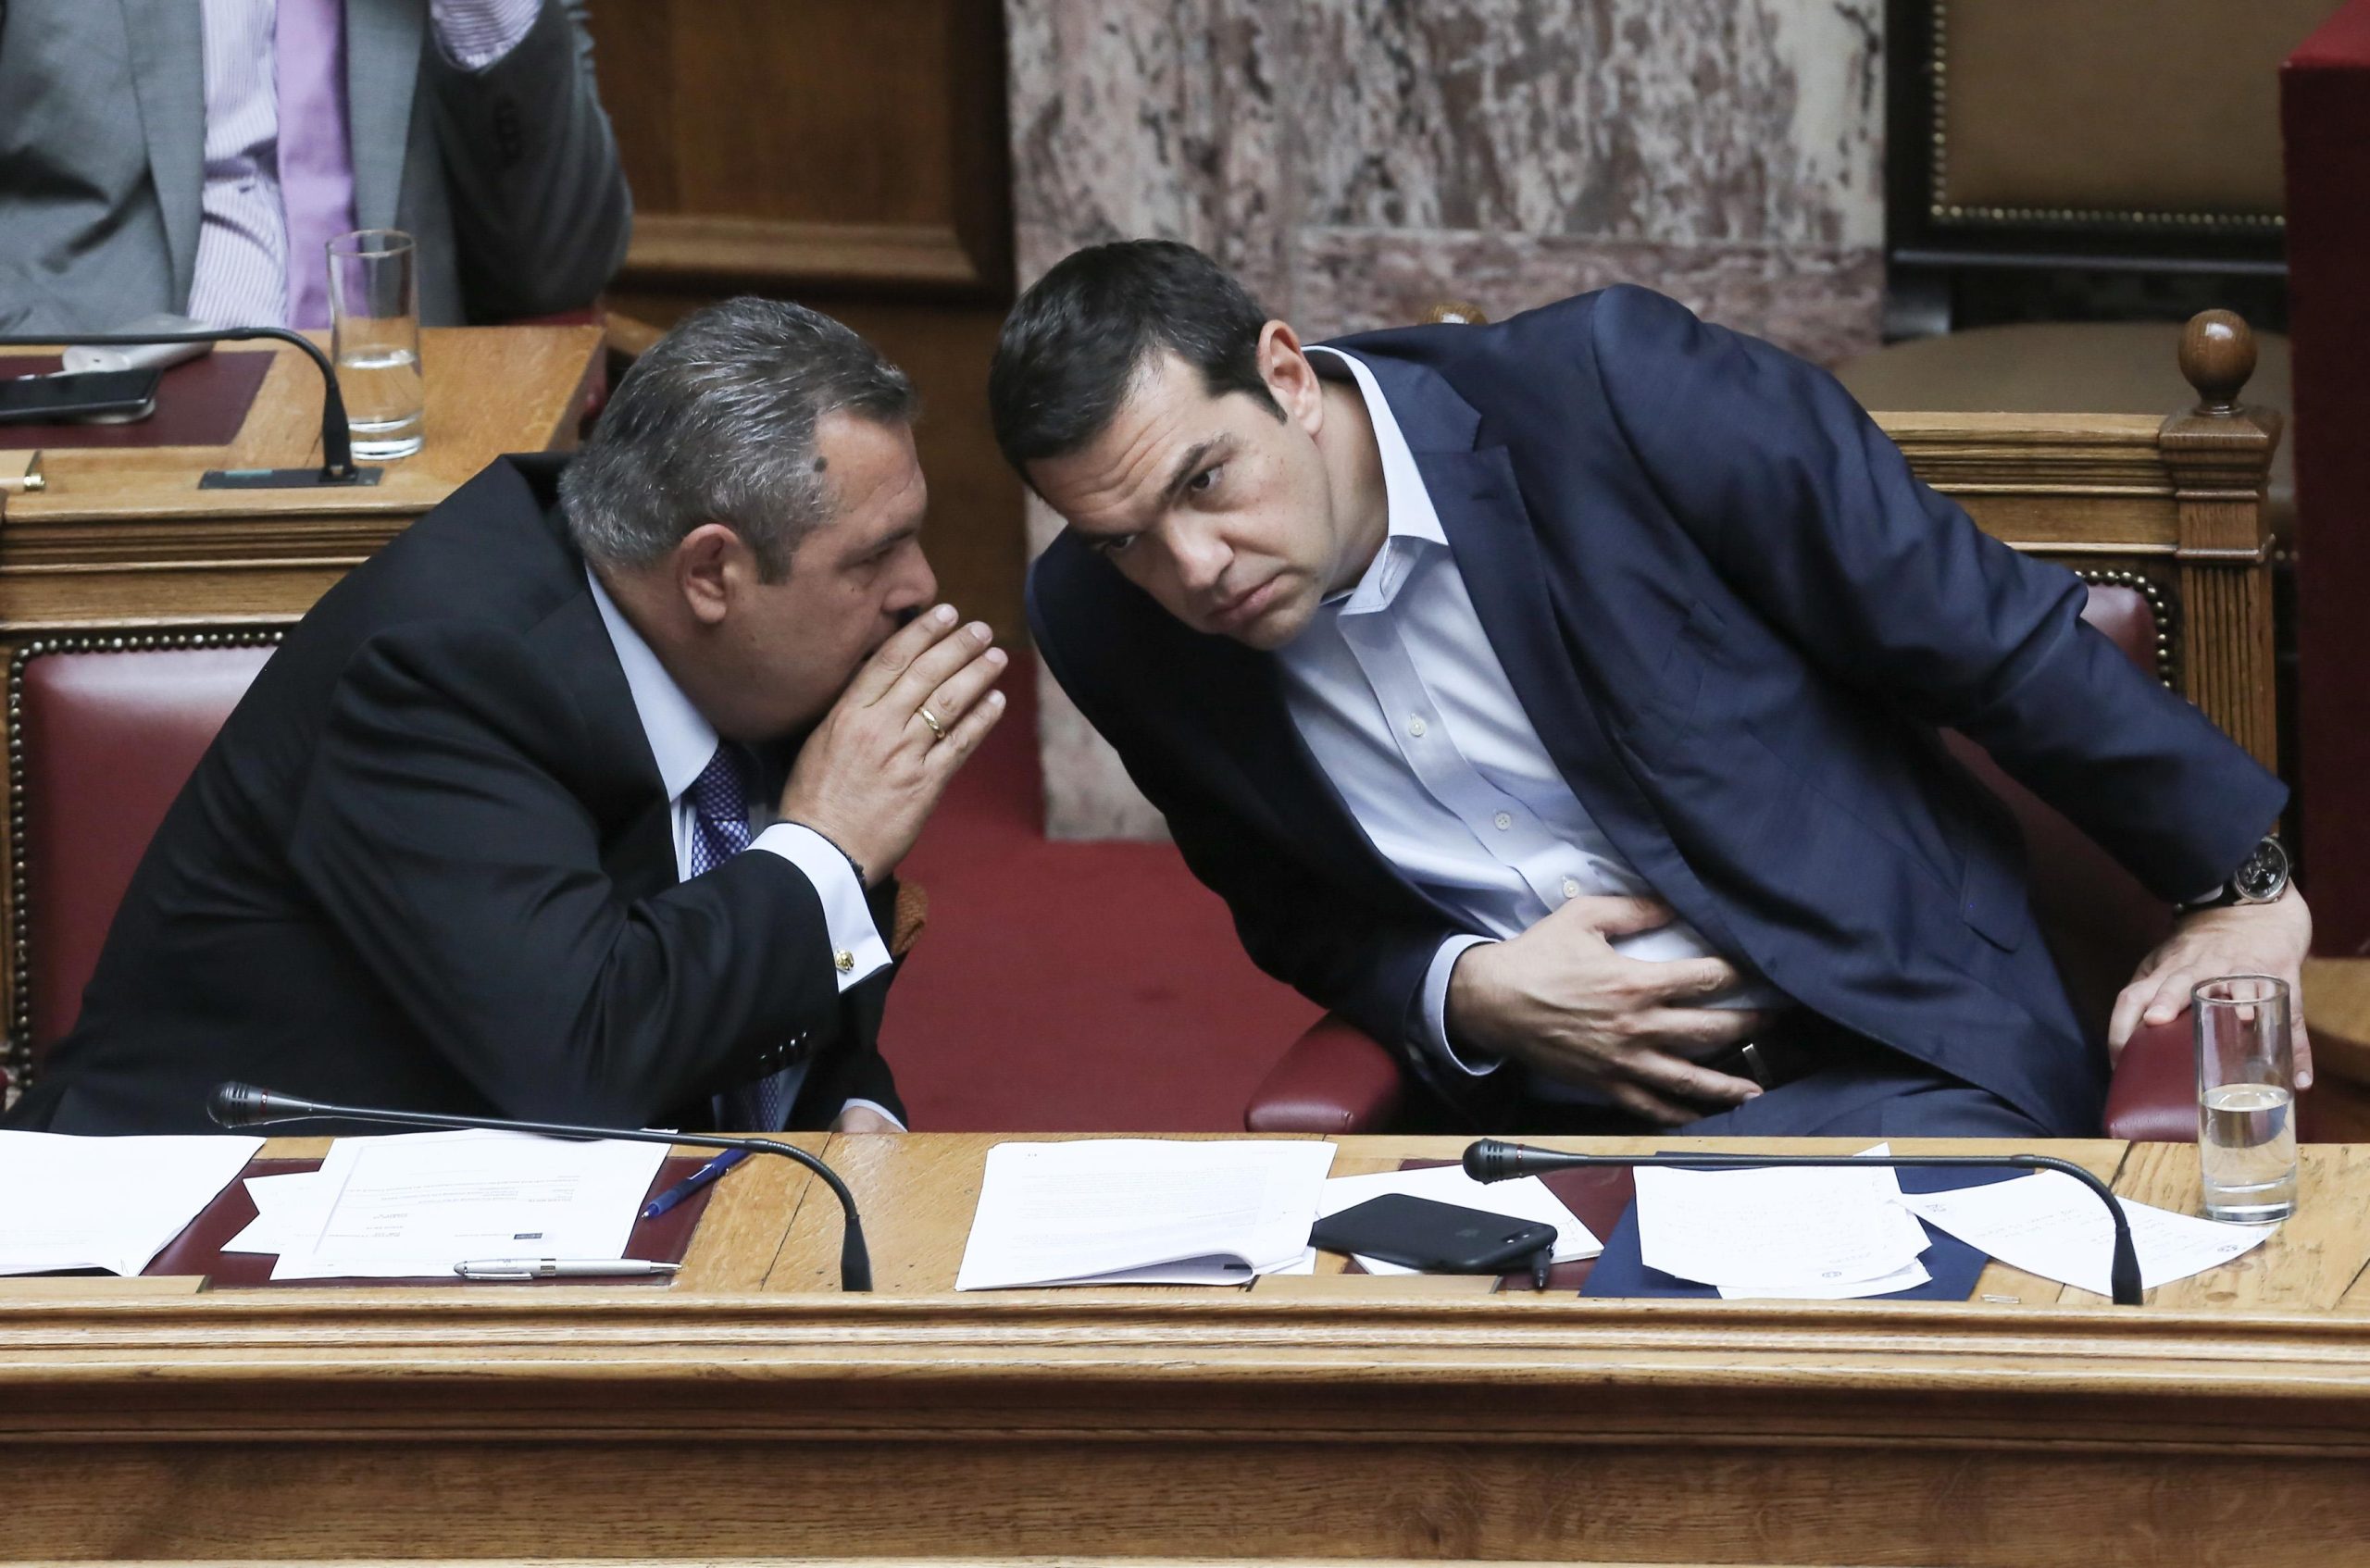 Ποιοι πολιτικοί χώροι ευνοούνται από την κατάρρευση της κυβέρνησης ΣΥΡΙΖΑ-ΑΝΕΛ